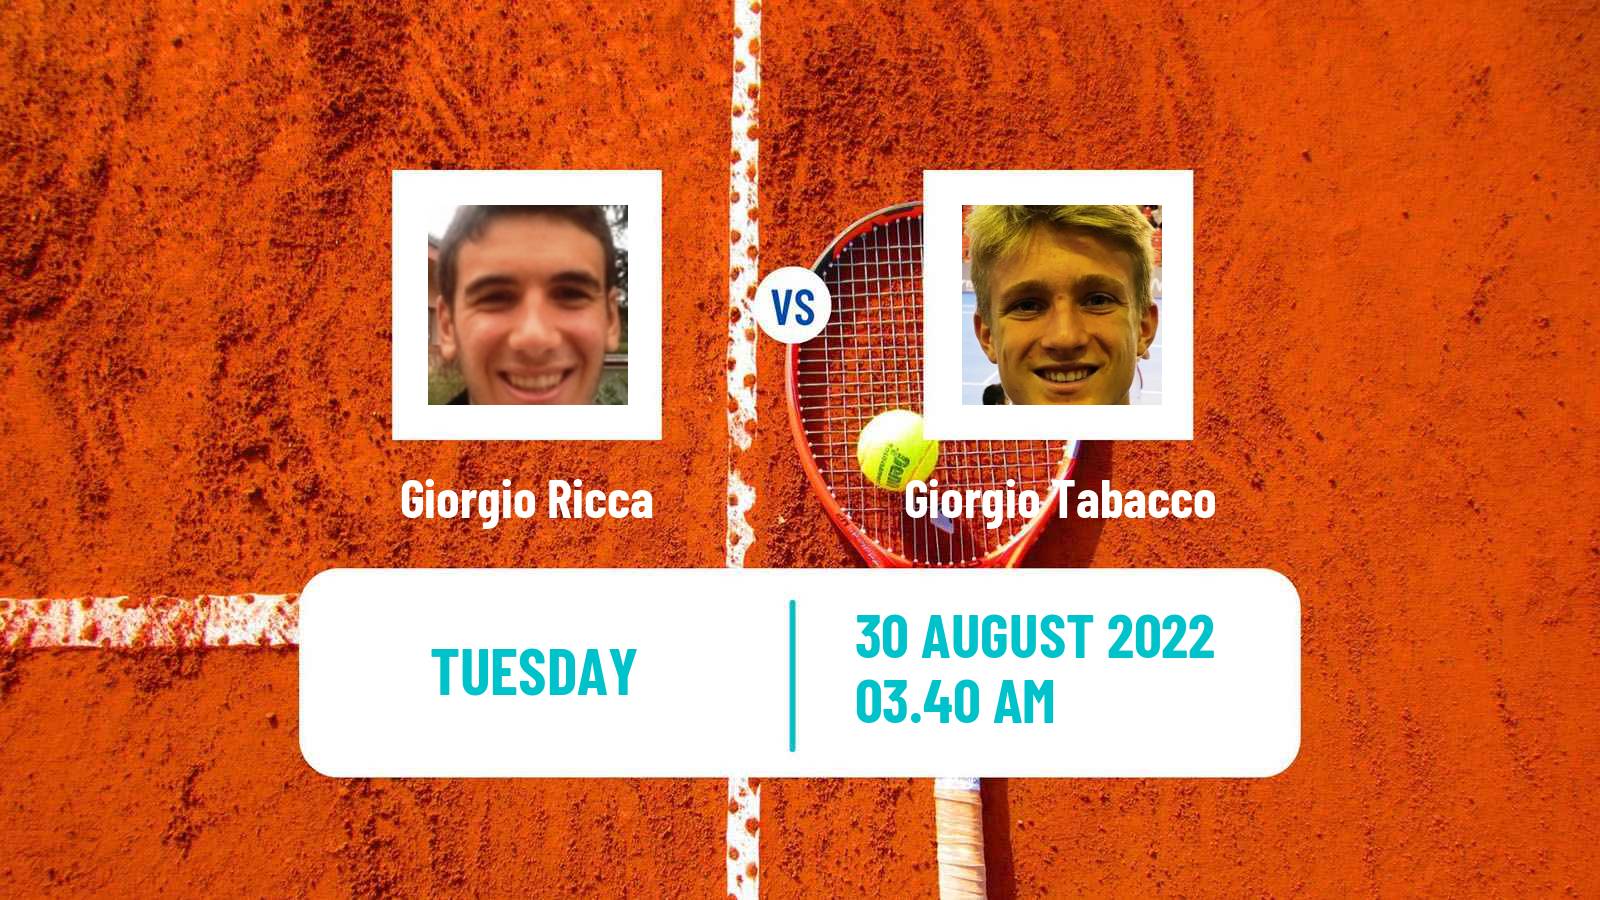 Tennis ITF Tournaments Giorgio Ricca - Giorgio Tabacco